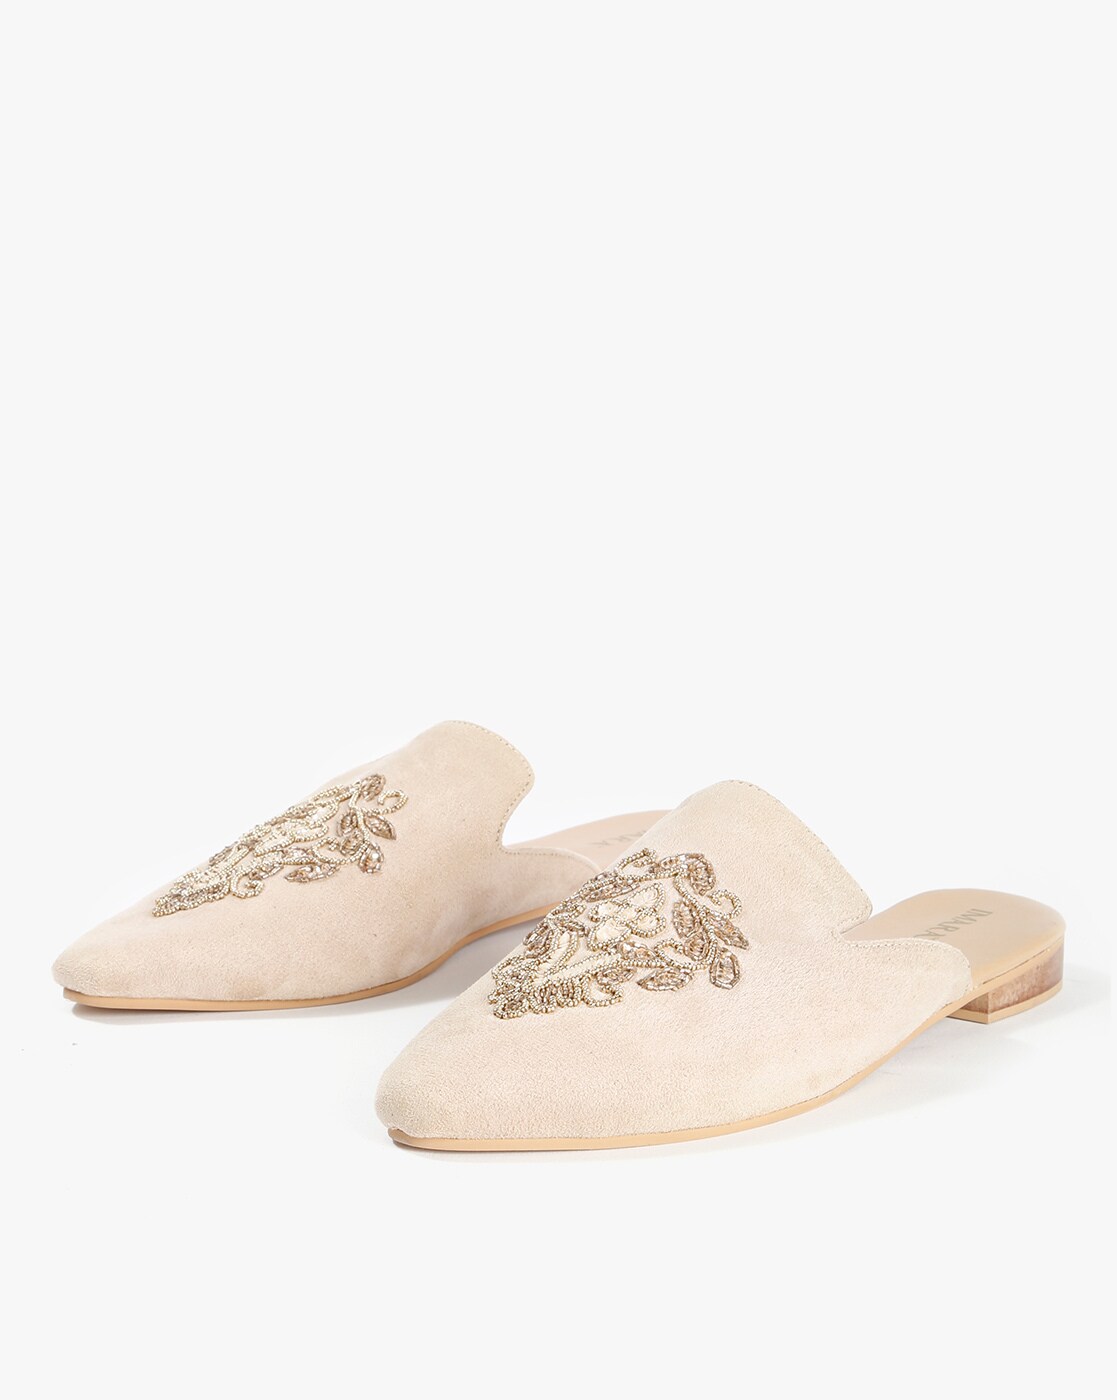 Buy Beige Flat Sandals for Women by 